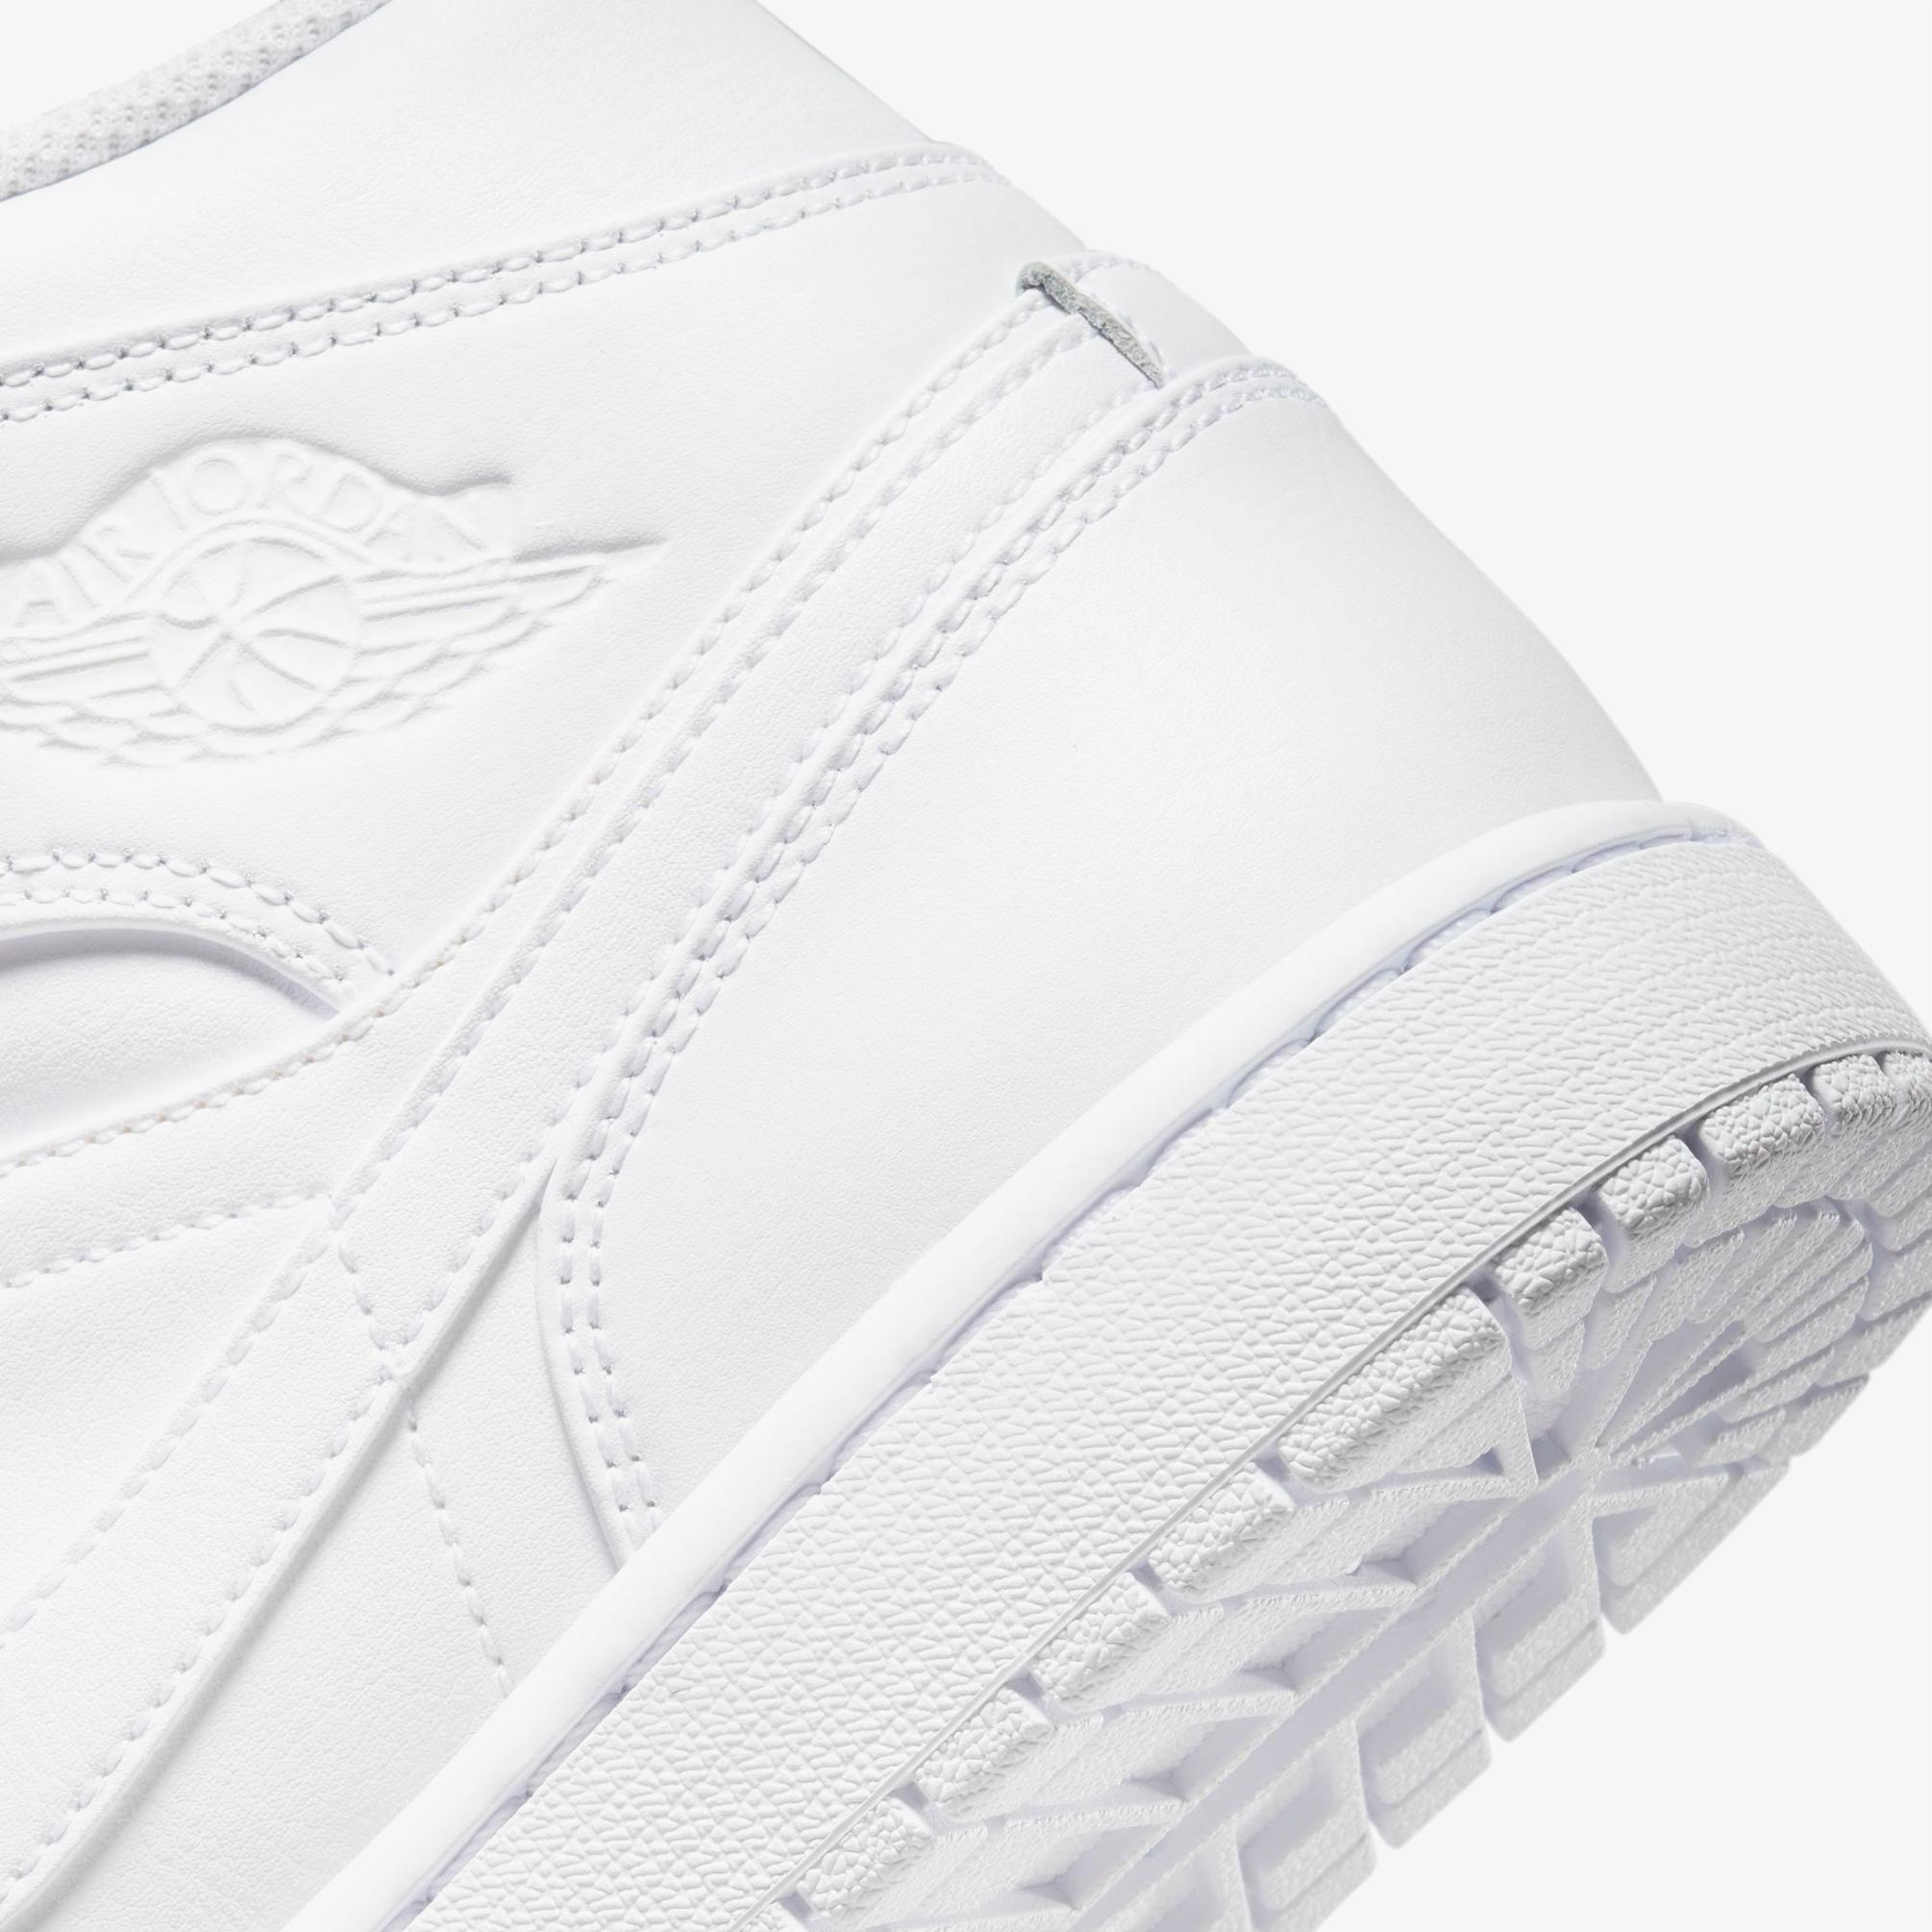  Nike Air Jordan 1 Mid Erkek Beyaz Sneaker